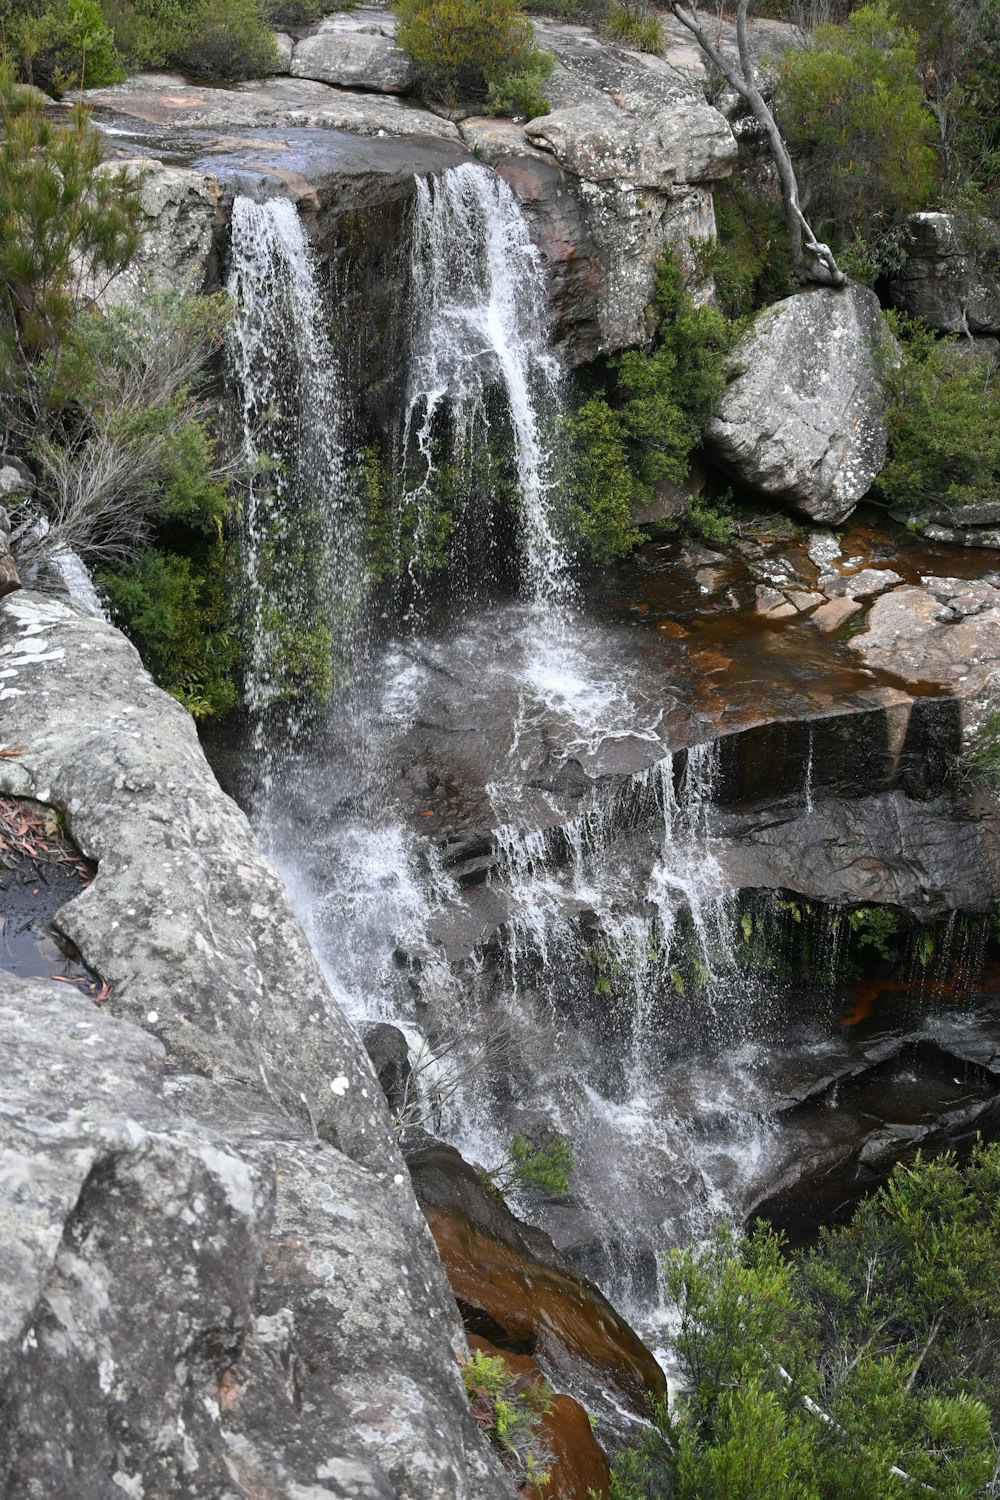 Una pequeña cascada en medio de una zona rocosa